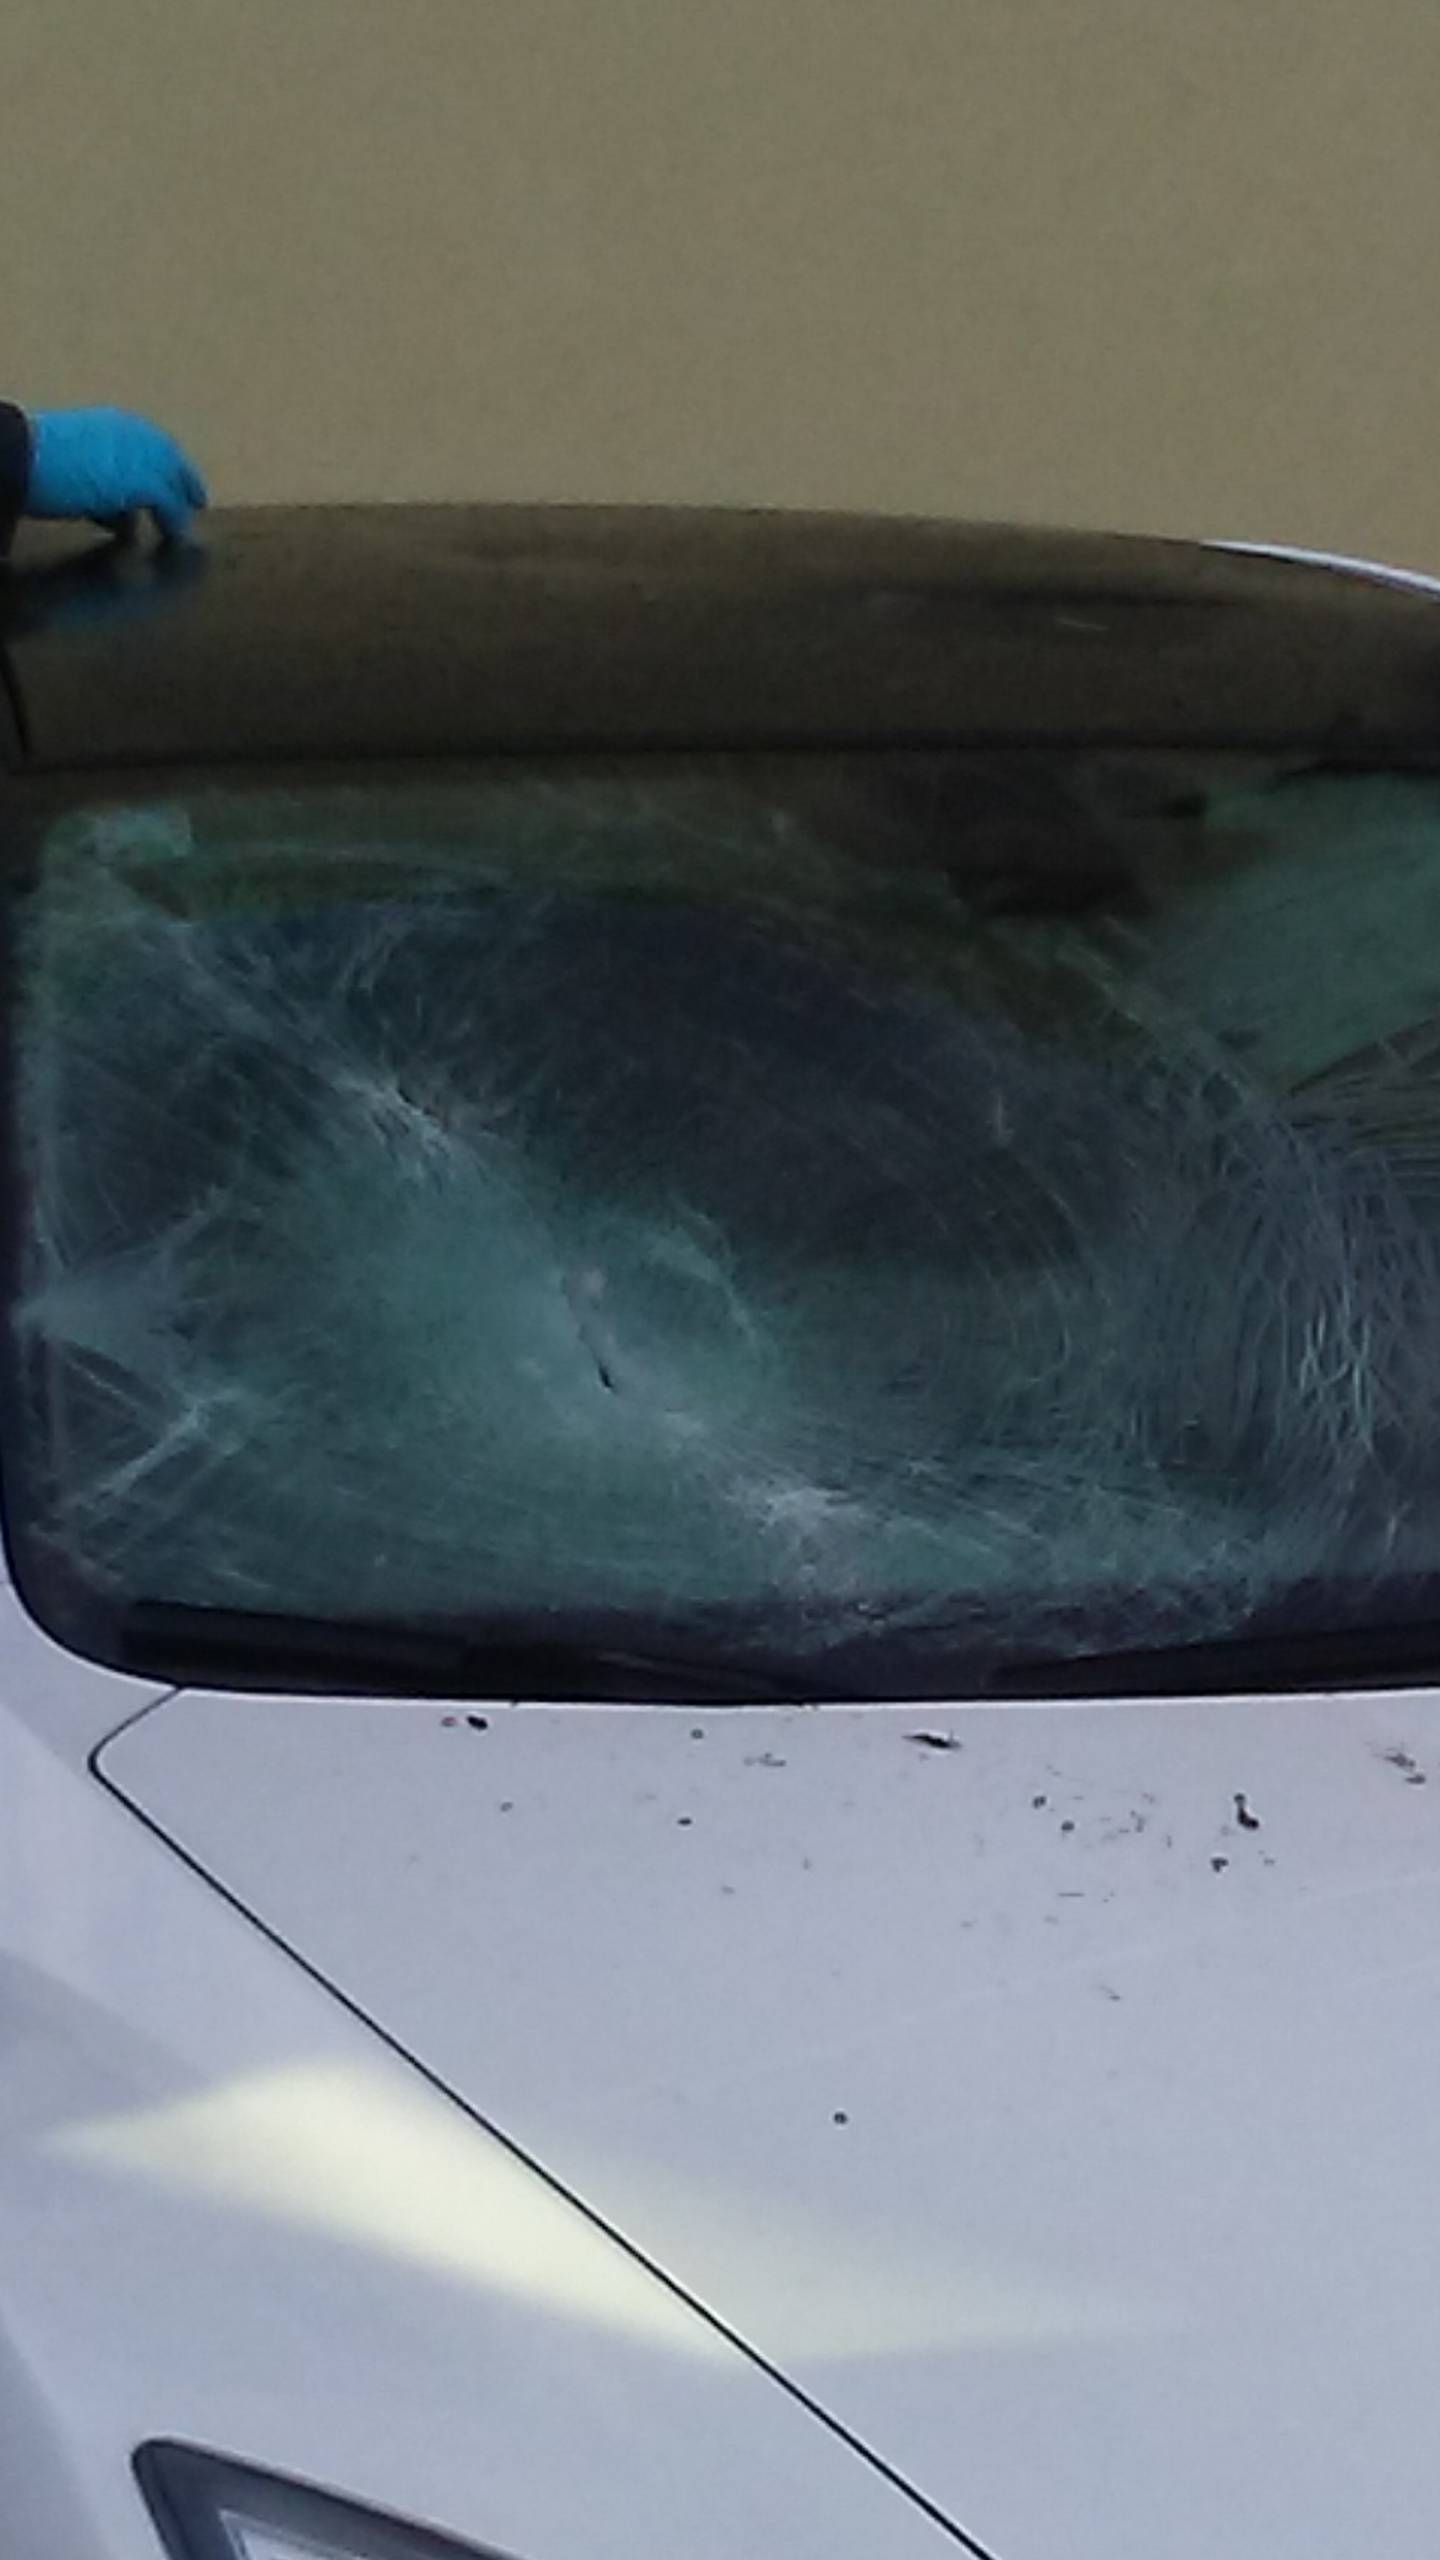 U Labinu oštetili čak 11 auta: 'Bacali su tegle, probili gume...'